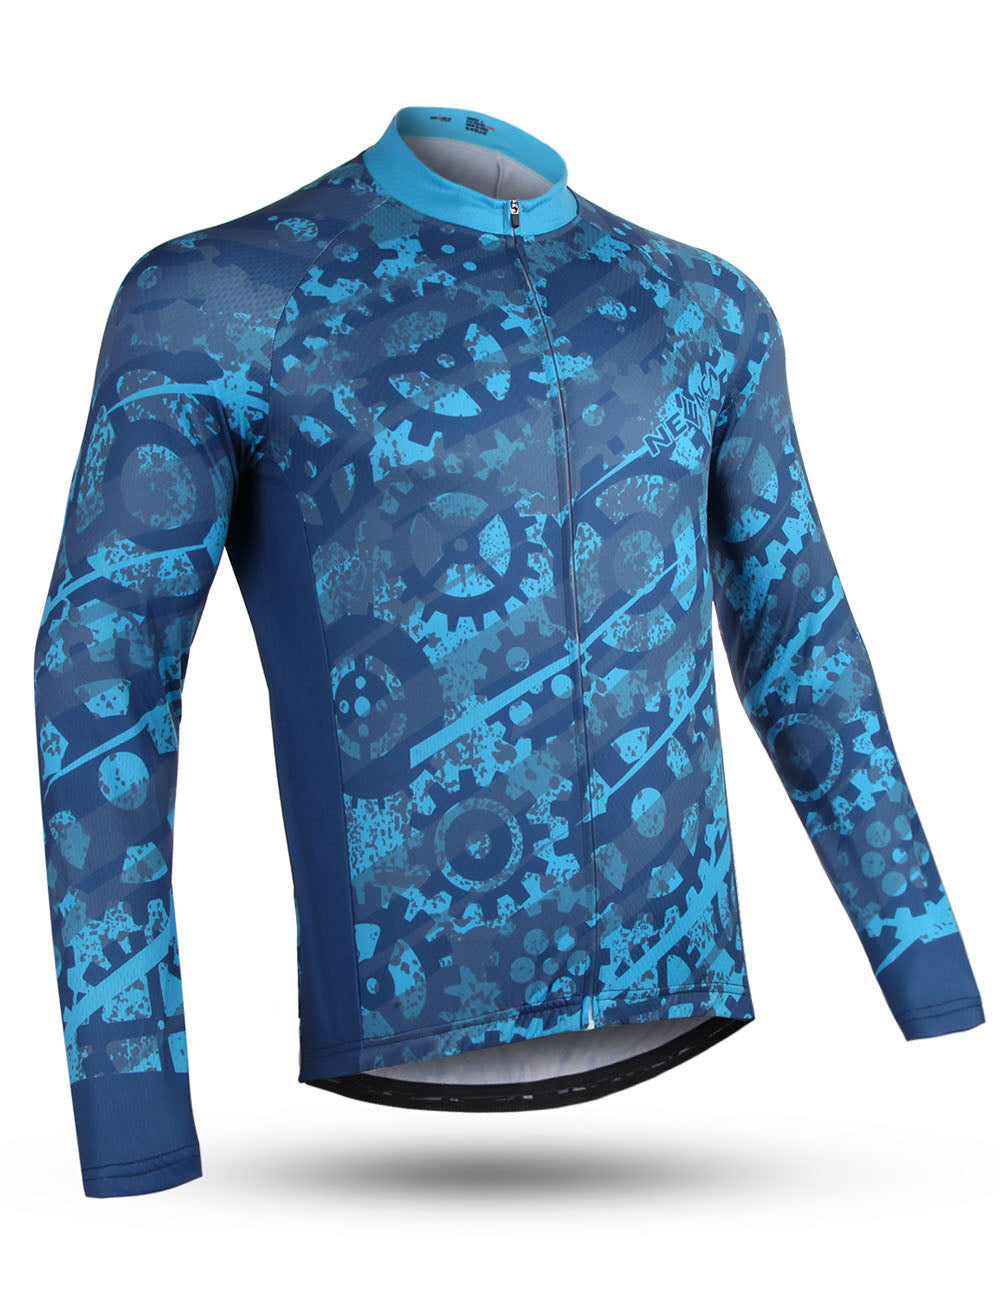 Neenca Long Sleeve Cycling Jersey Men's Mountain Bike Shirt Tops